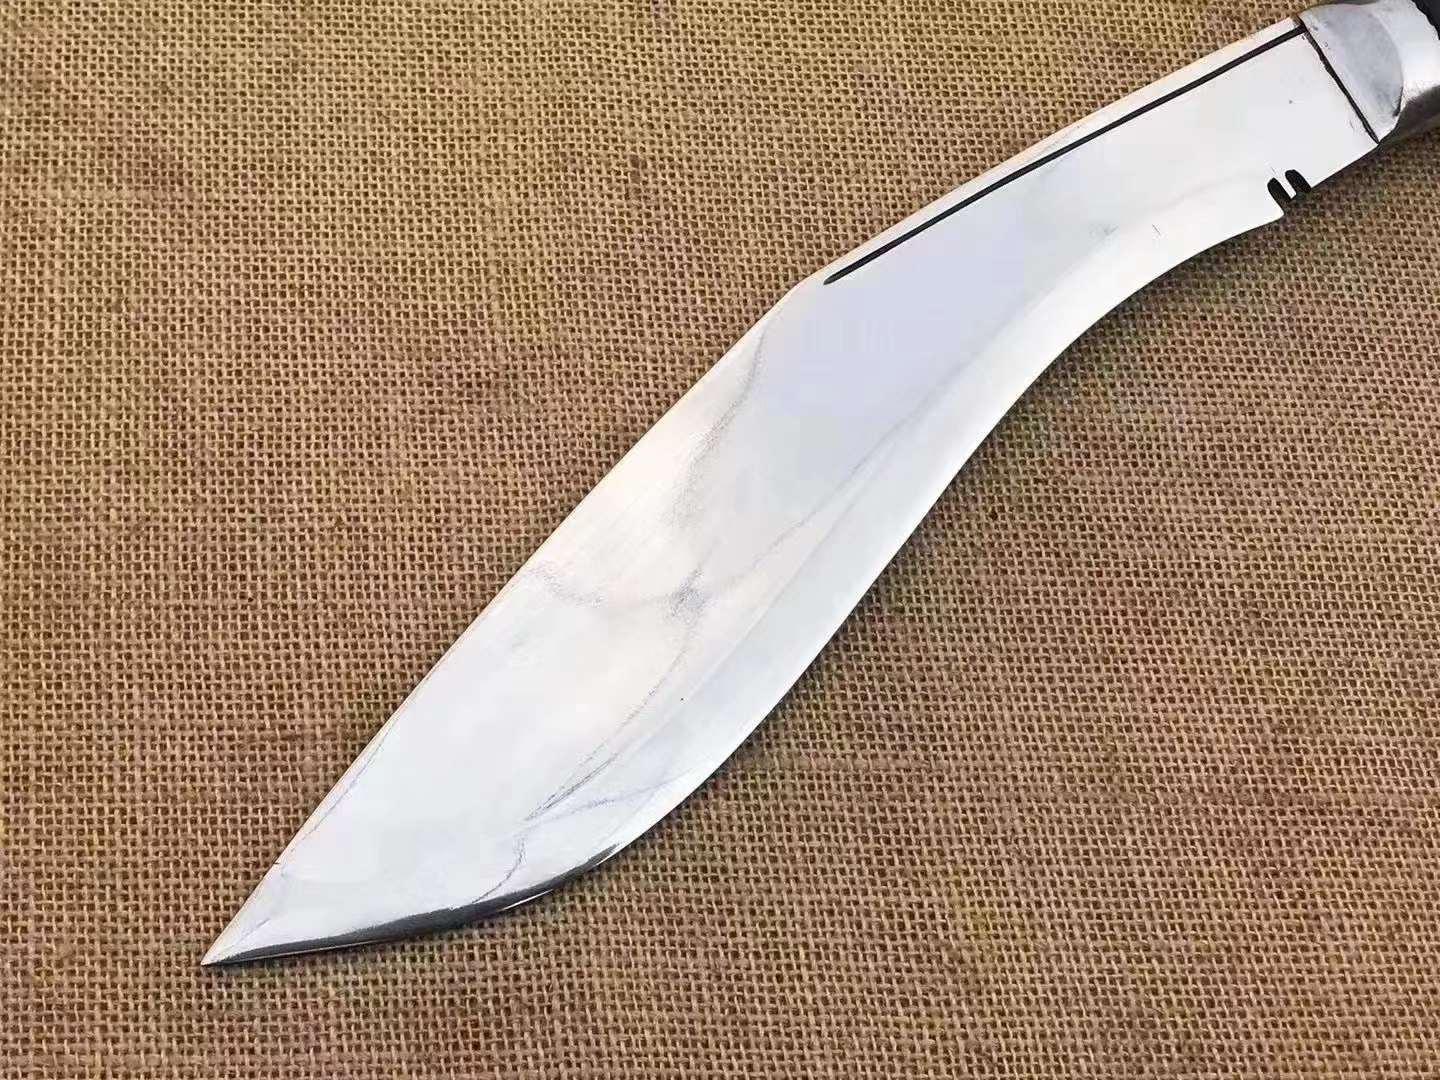 尼泊尔弯刀图片军刀图片